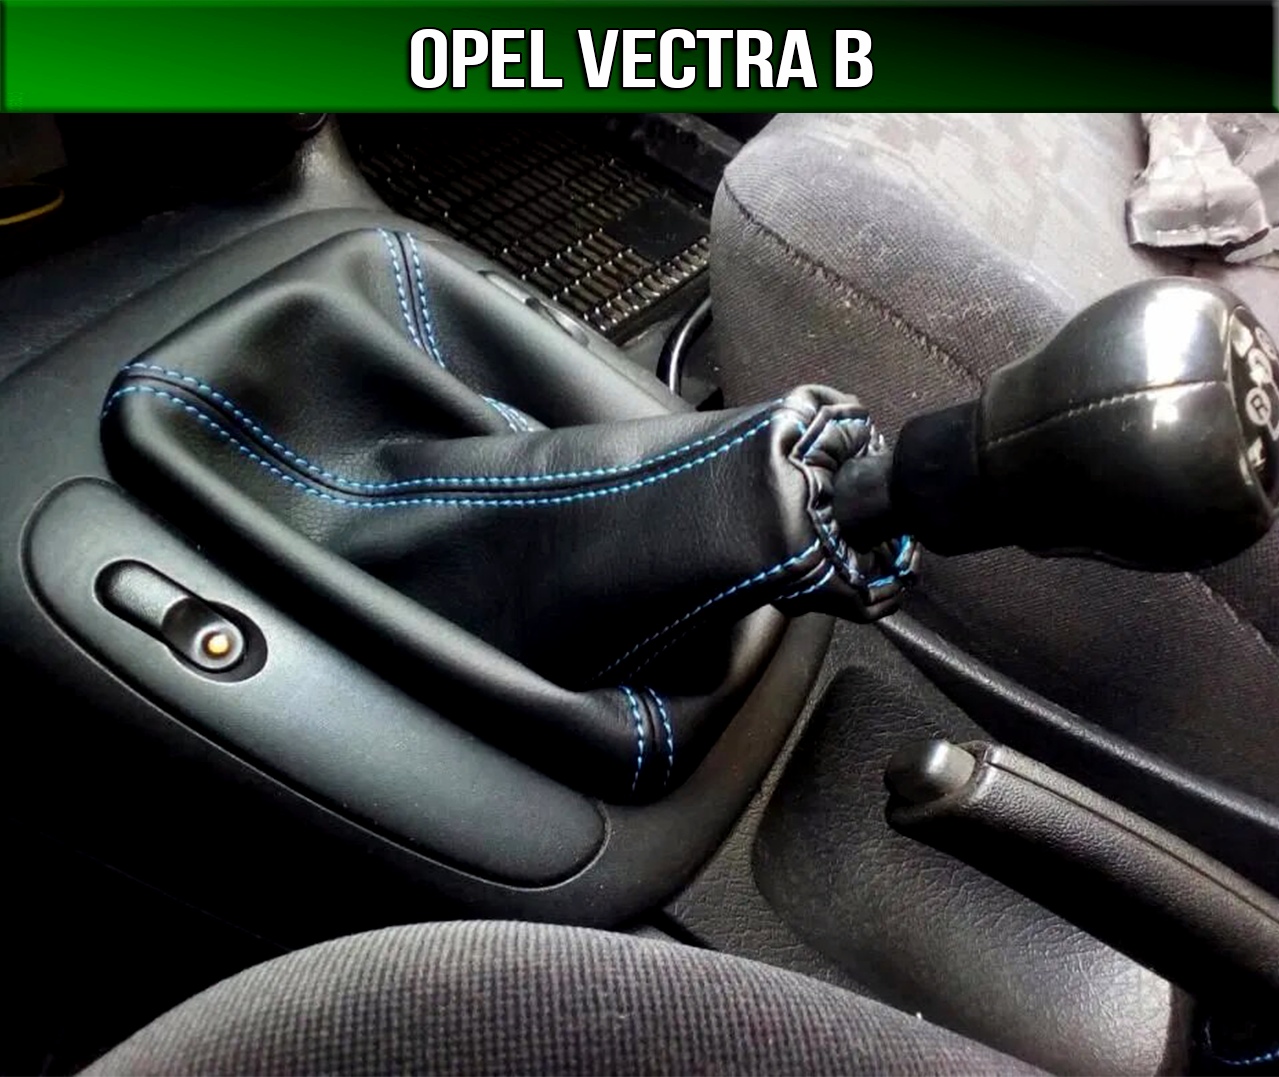 Коробка передач вектра б. Чехол КПП Opel Vectra b. Чехол КПП на Opel Vectra. Opel Omega b чехол КПП. Чехол КПП ВАЗ Opel Vectra a.